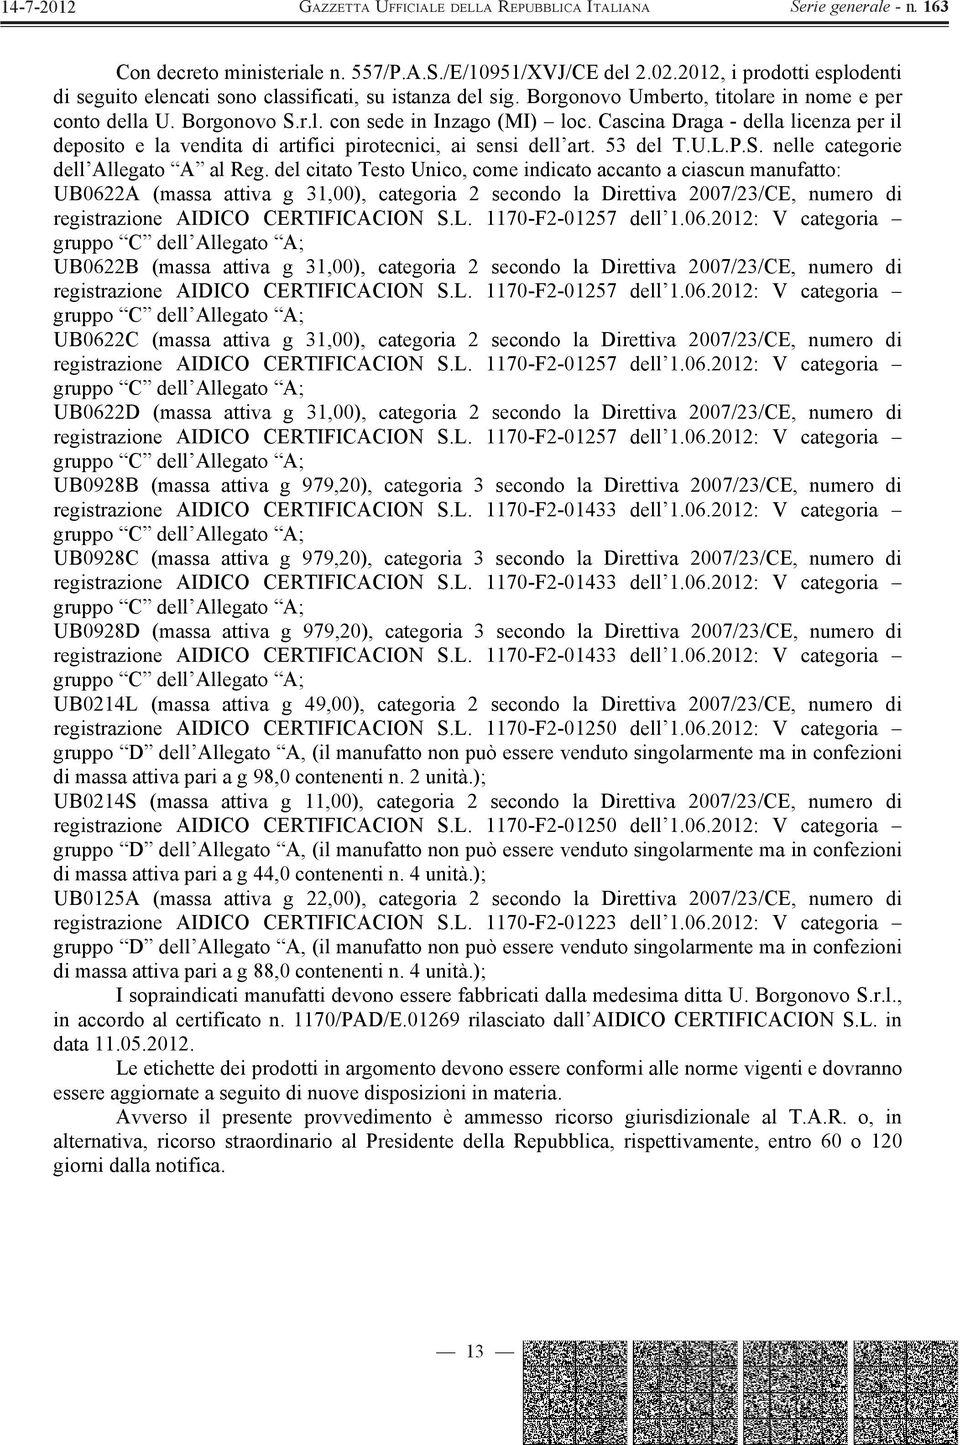 Cascina Draga - della licenza per il deposito e la vendita di artifici pirotecnici, ai sensi dell art. 53 del T.U.L.P.S. nelle categorie dell Allegato A al Reg.